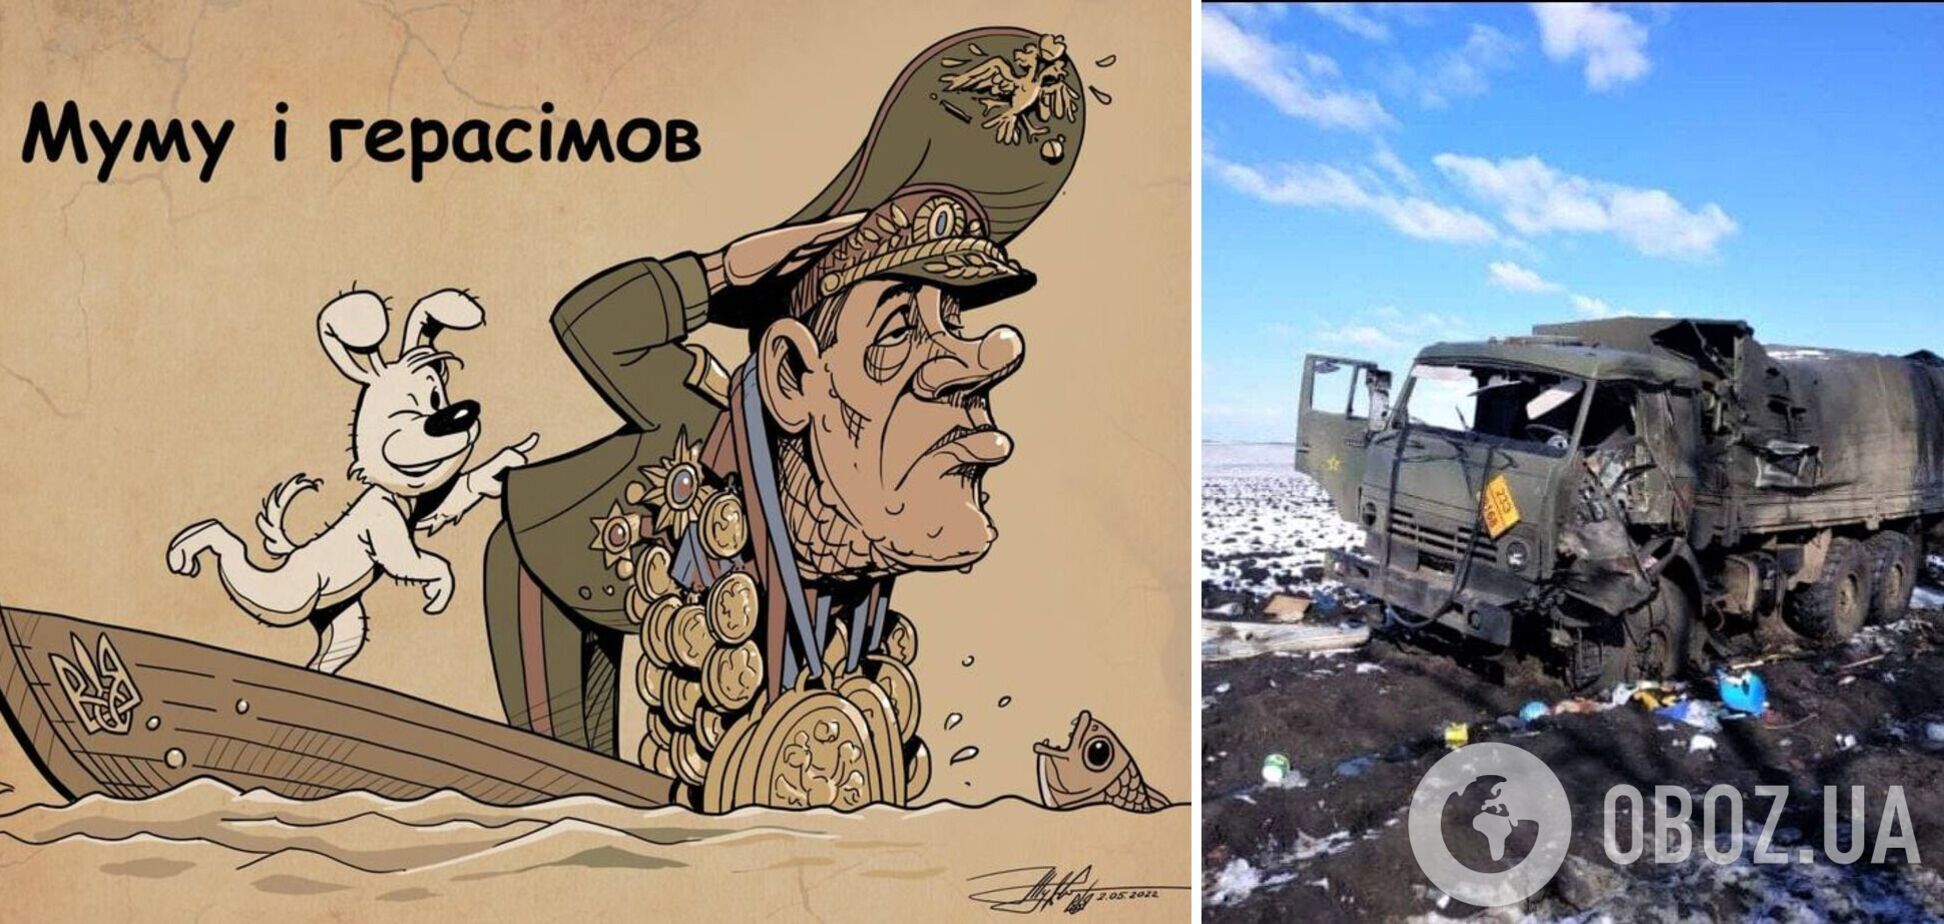 'Война и идиоты': 'Герасим' уже проявил свой военный талант, статистика потерь русских оживилась